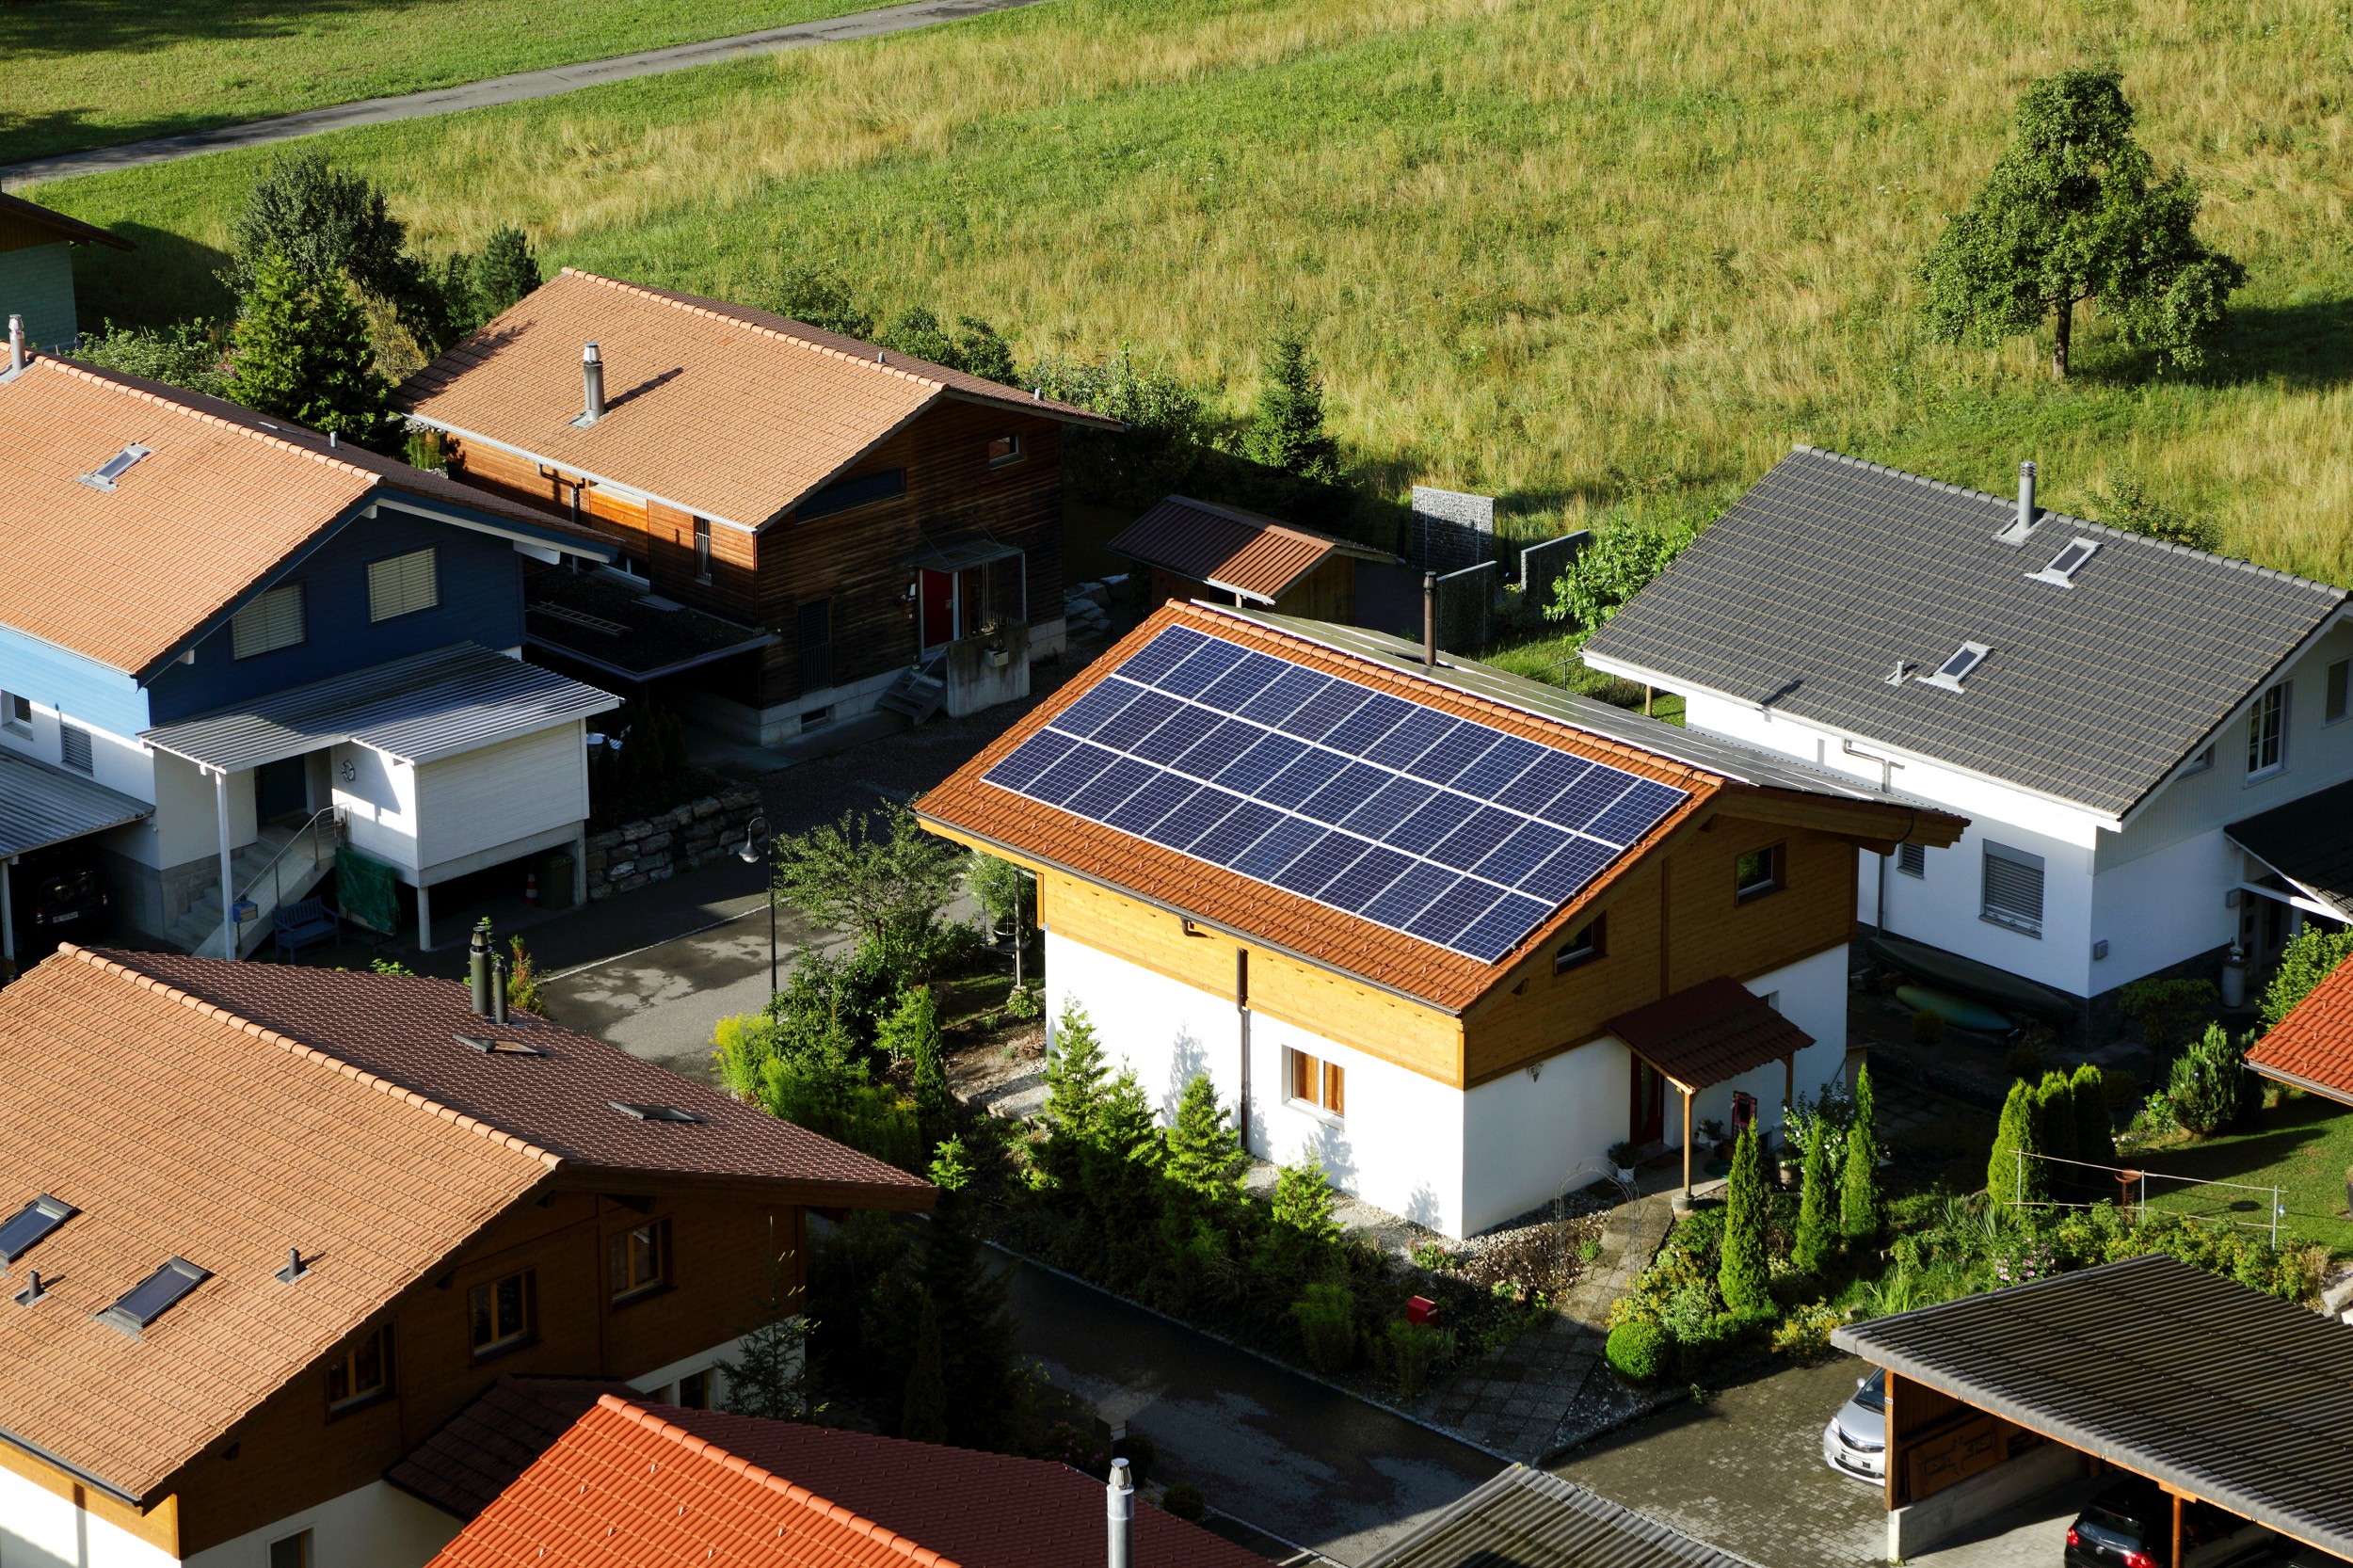 Maison à Interlaken : pour utiliser pleinement le potentiel de l’énergie solaire, un million de toitures doivent être recouvertes de panneaux solaires.